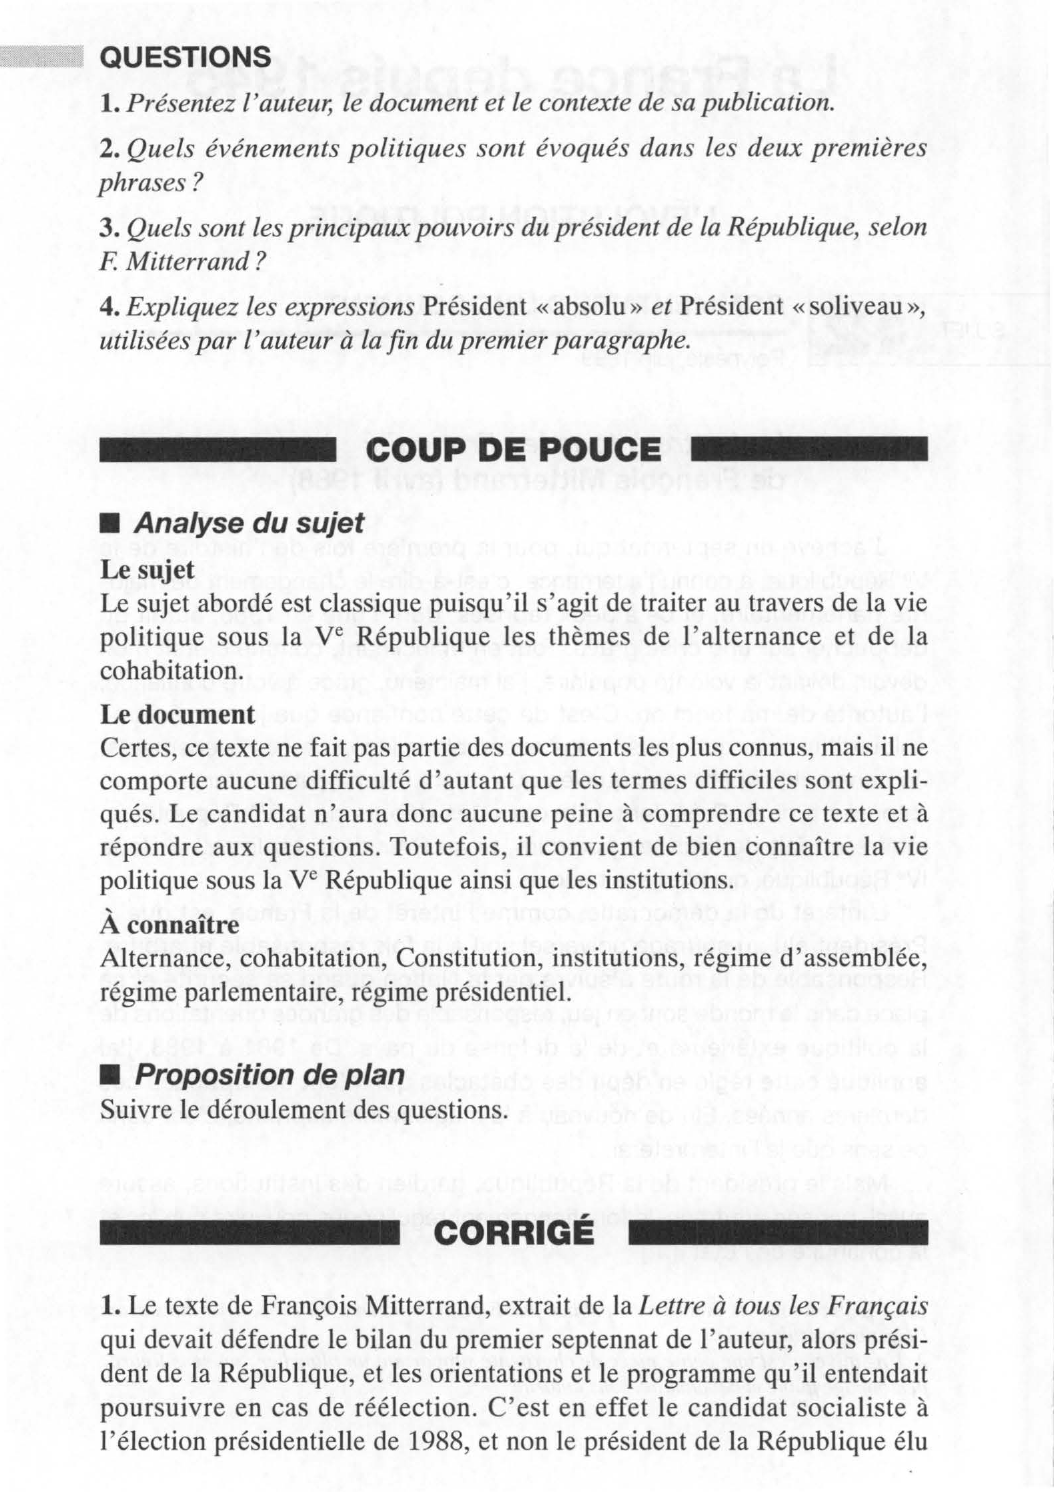 Prévisualisation du document COMMENTAIRE D'UN DOCUMENT  :  La Lettre à tous les Français  de François Mitterrand (avril 1988) - HISTOIRE